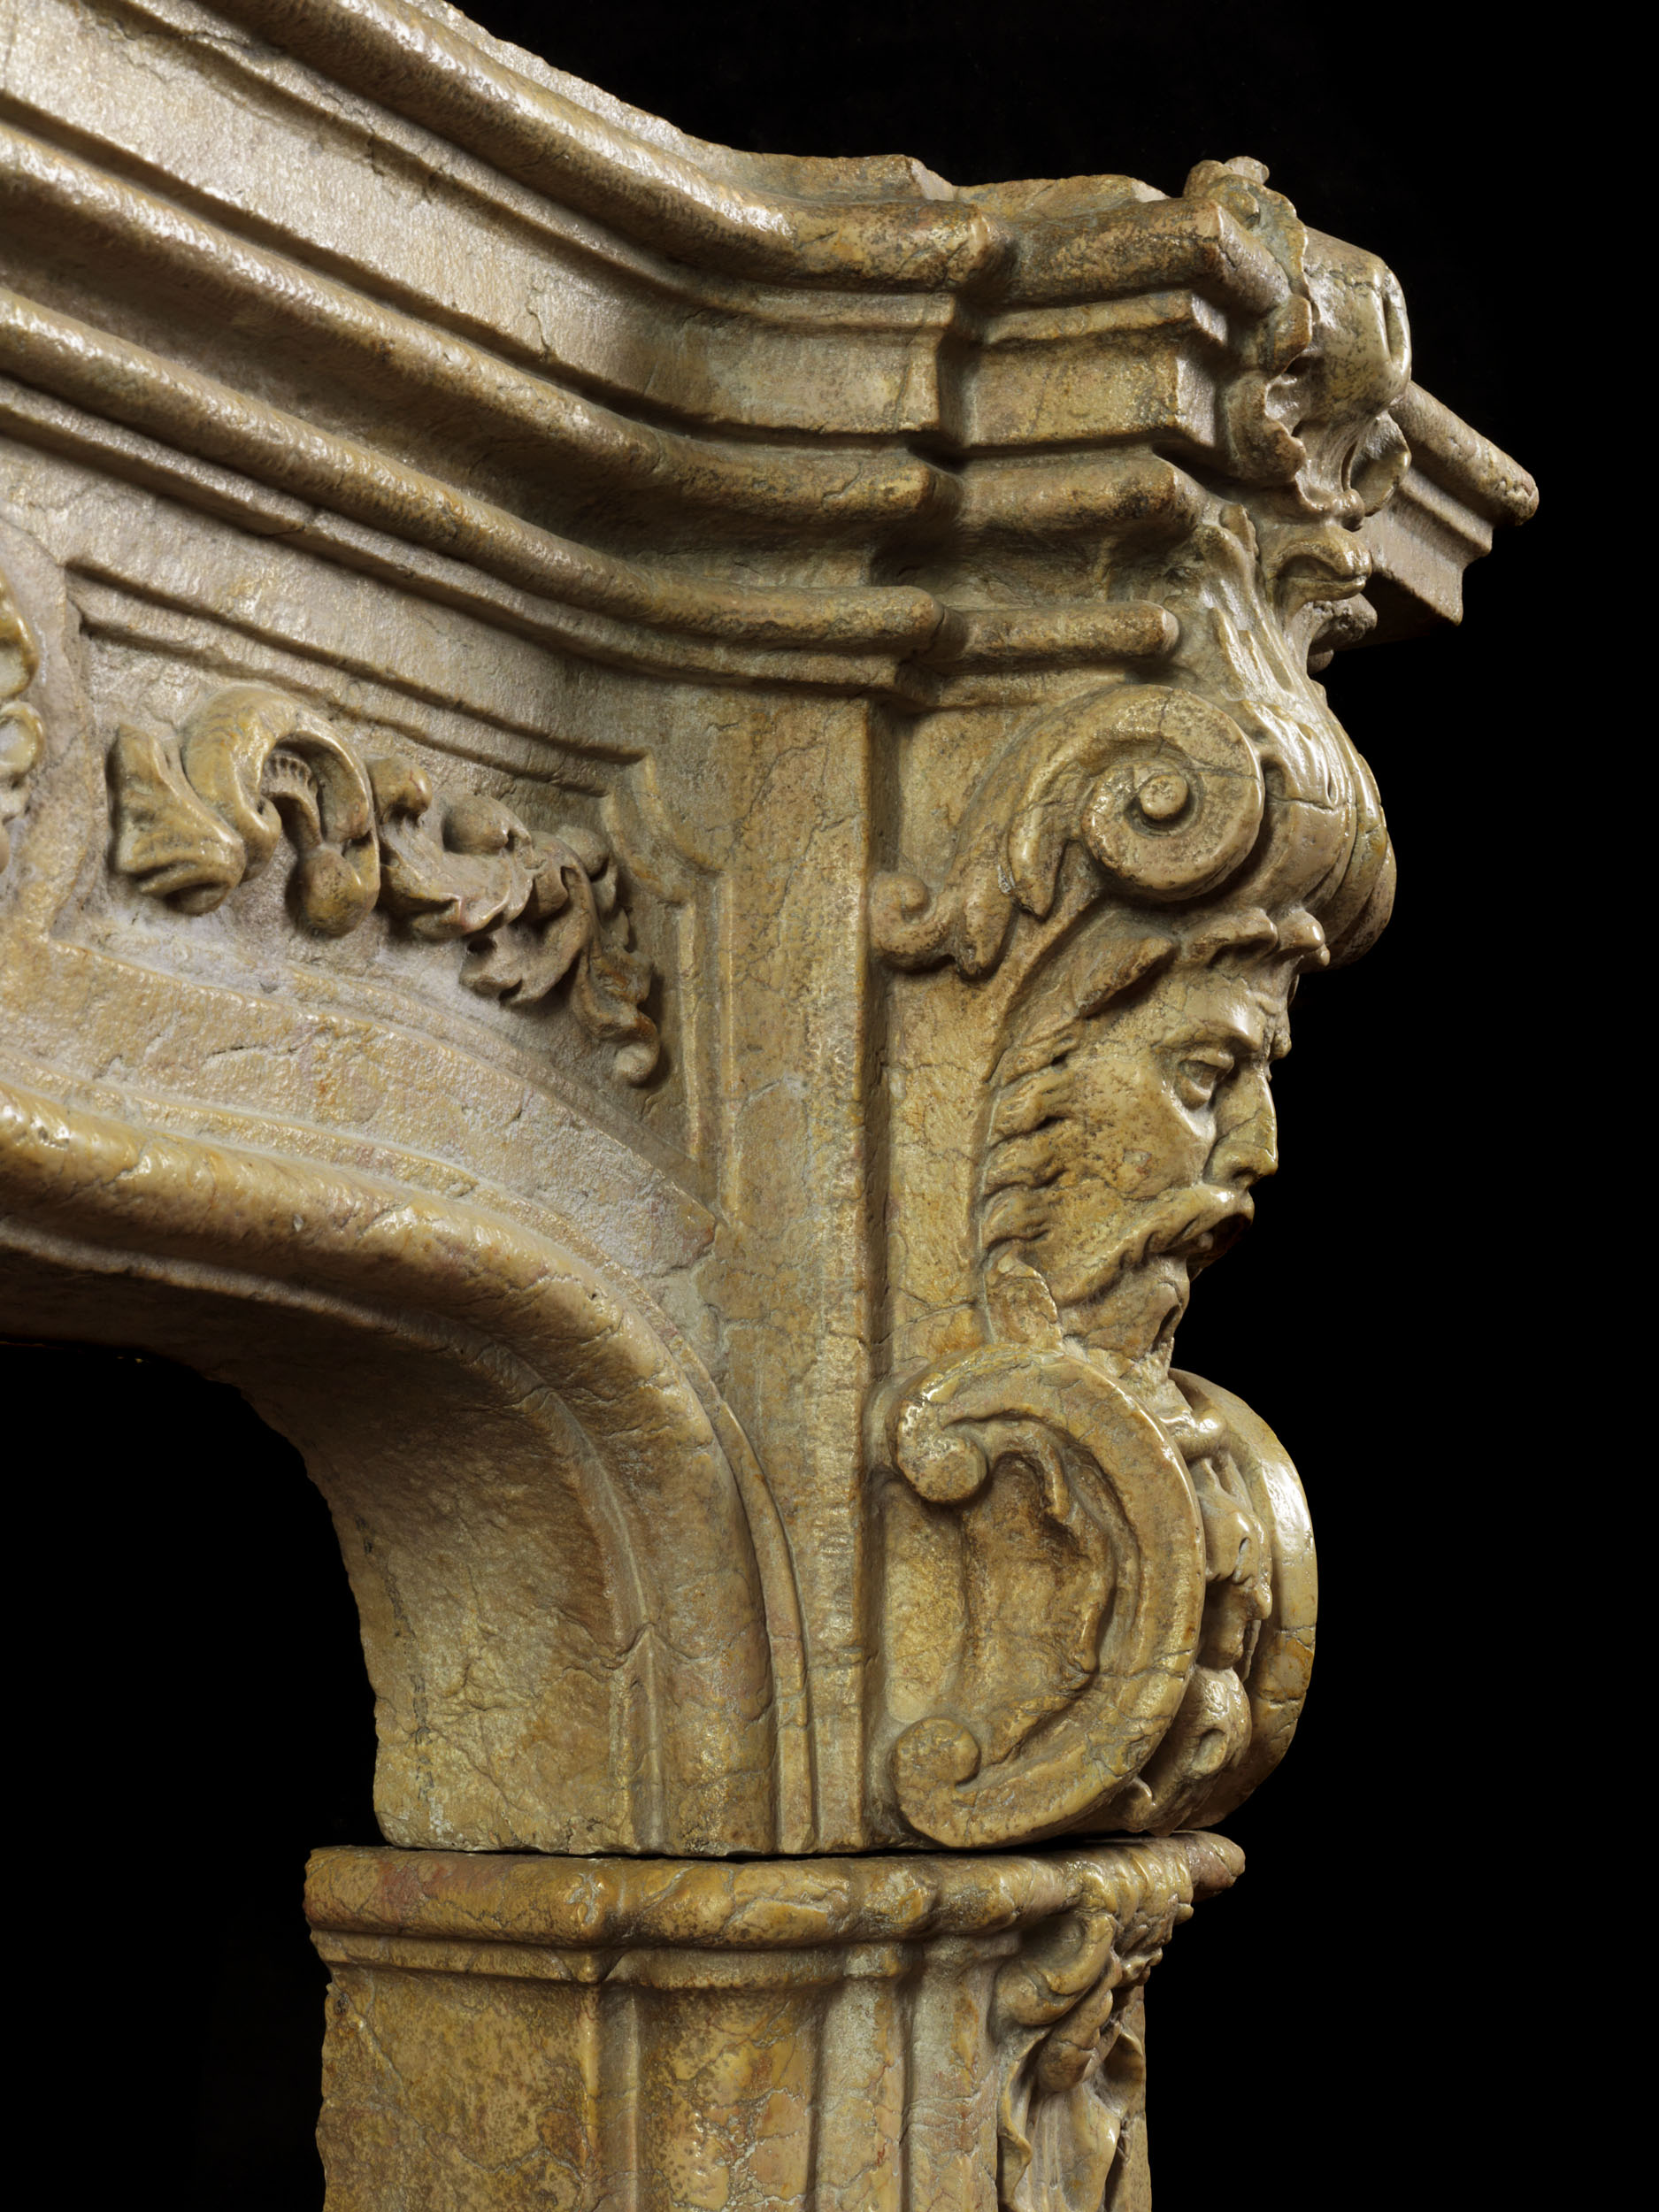 Antique Renaissance Revival marble fireplace mantel 

